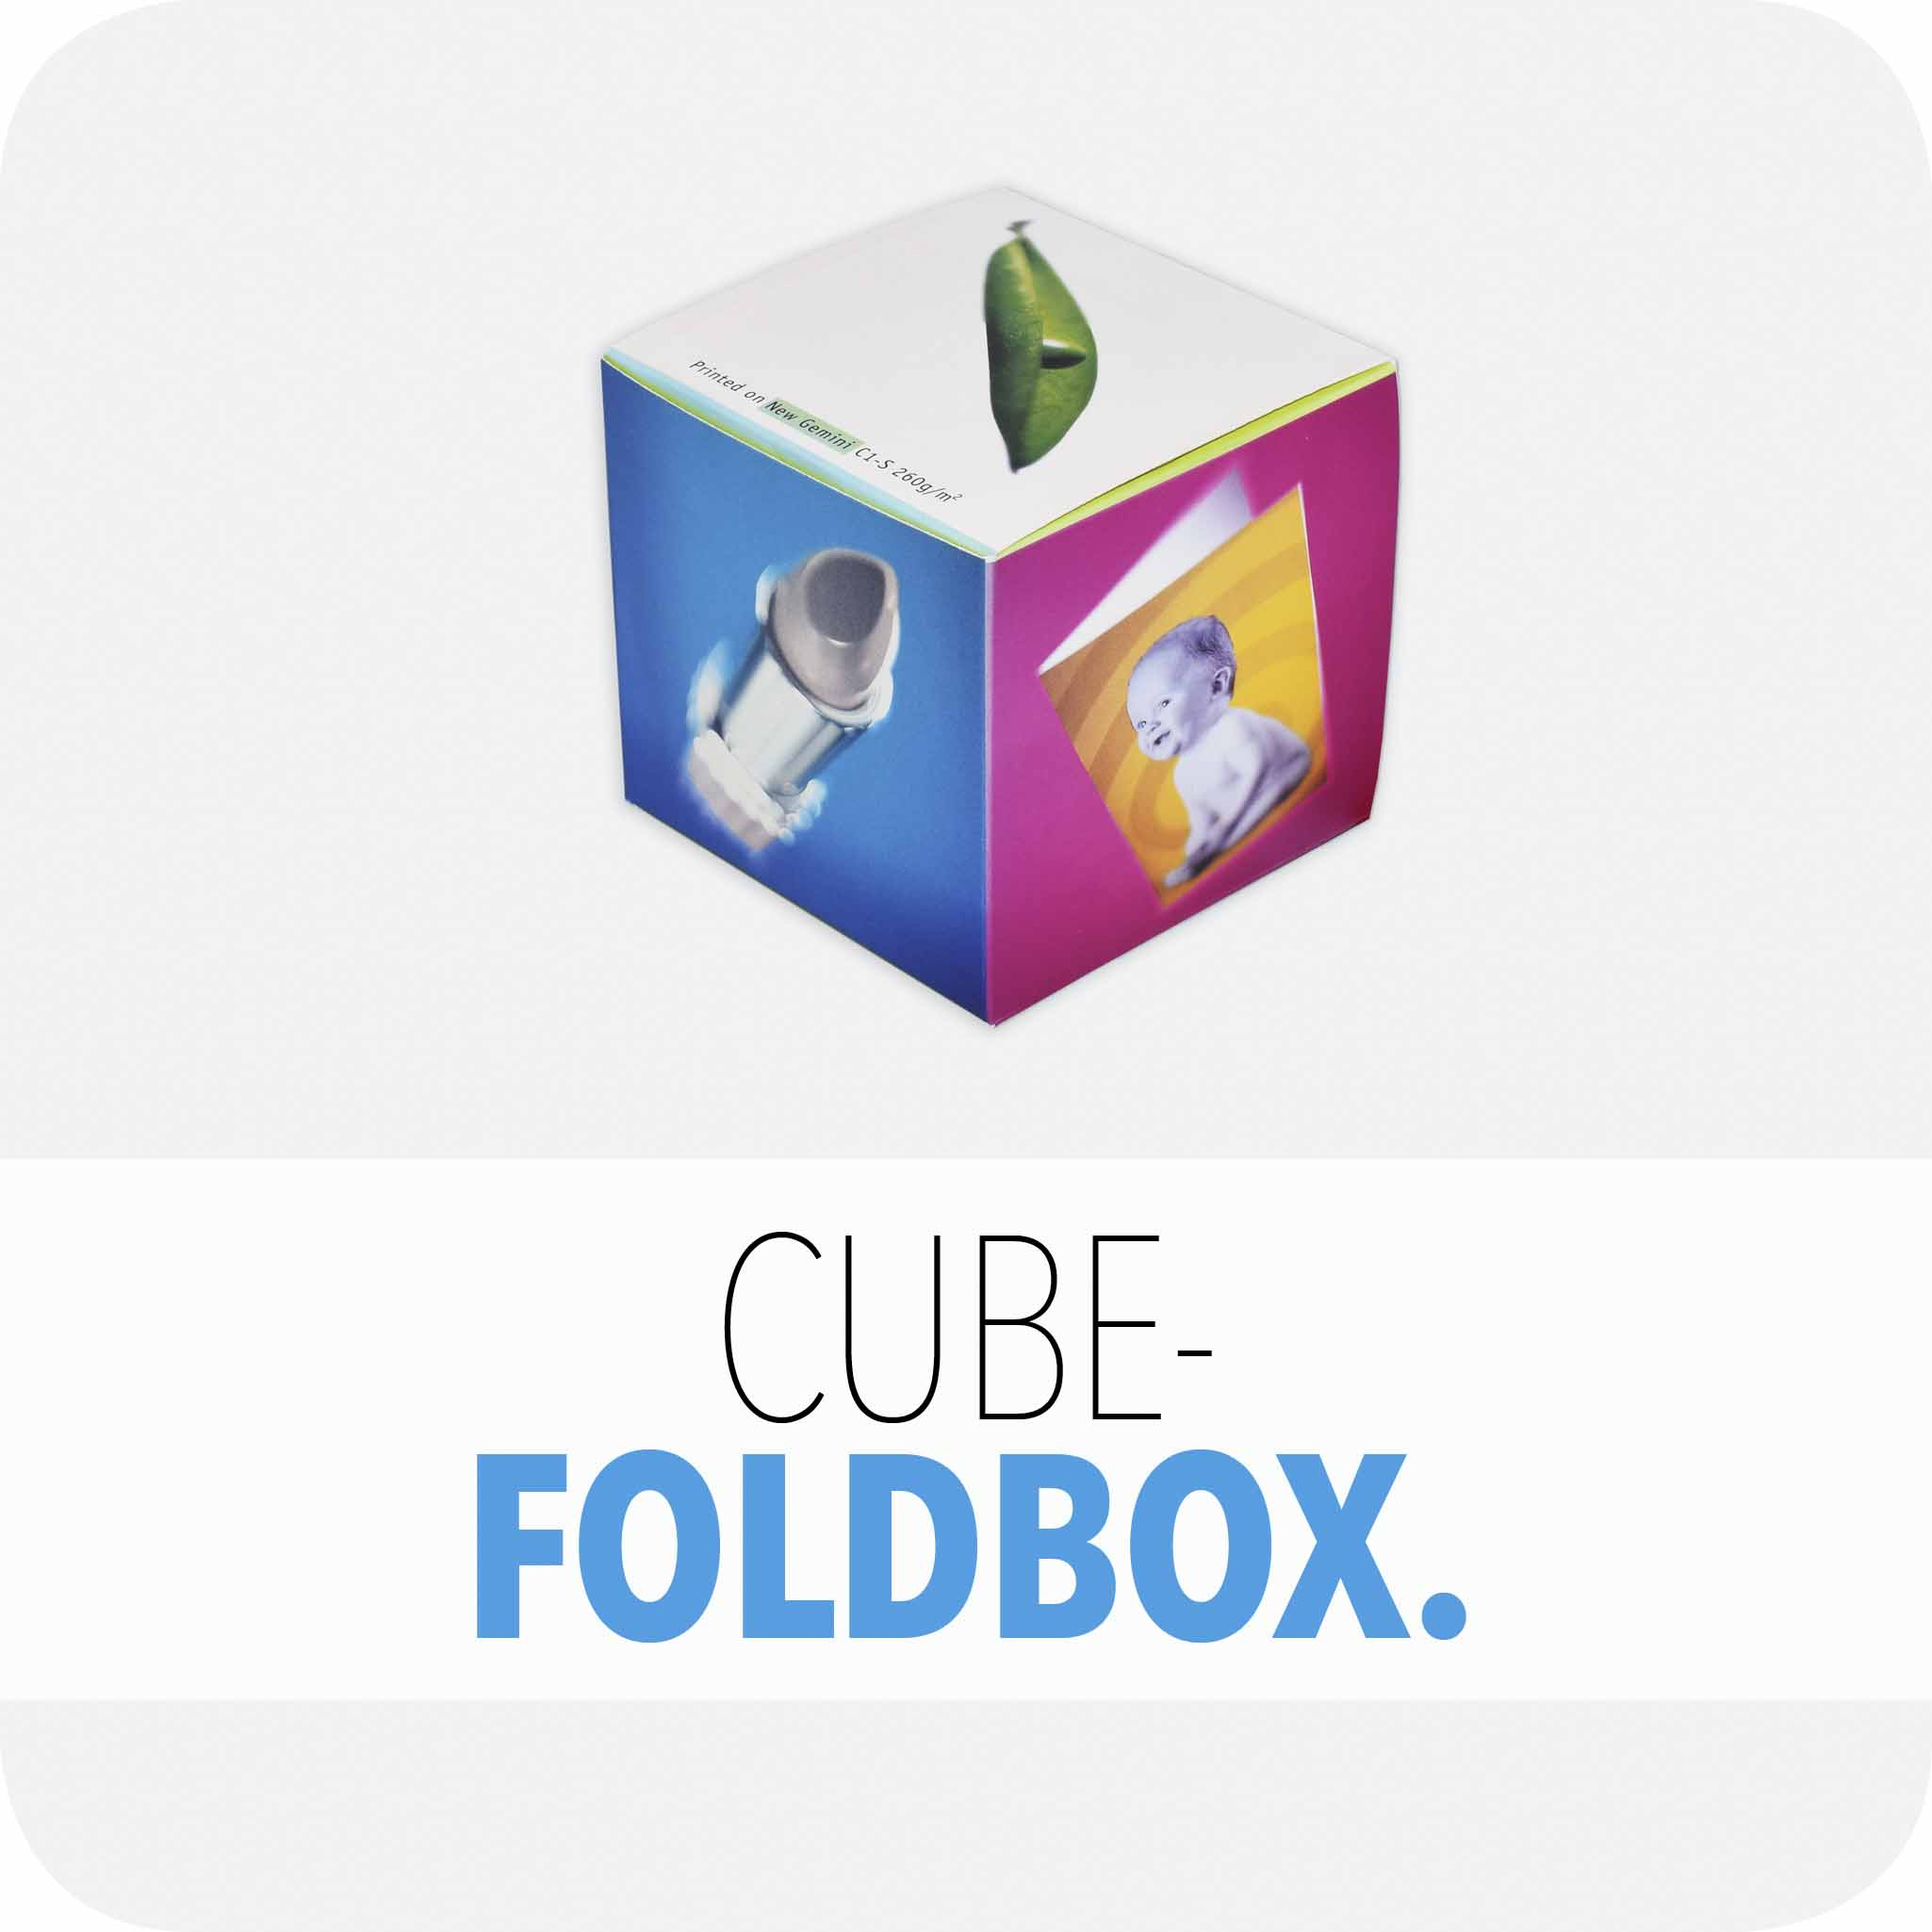 Cube foldbox